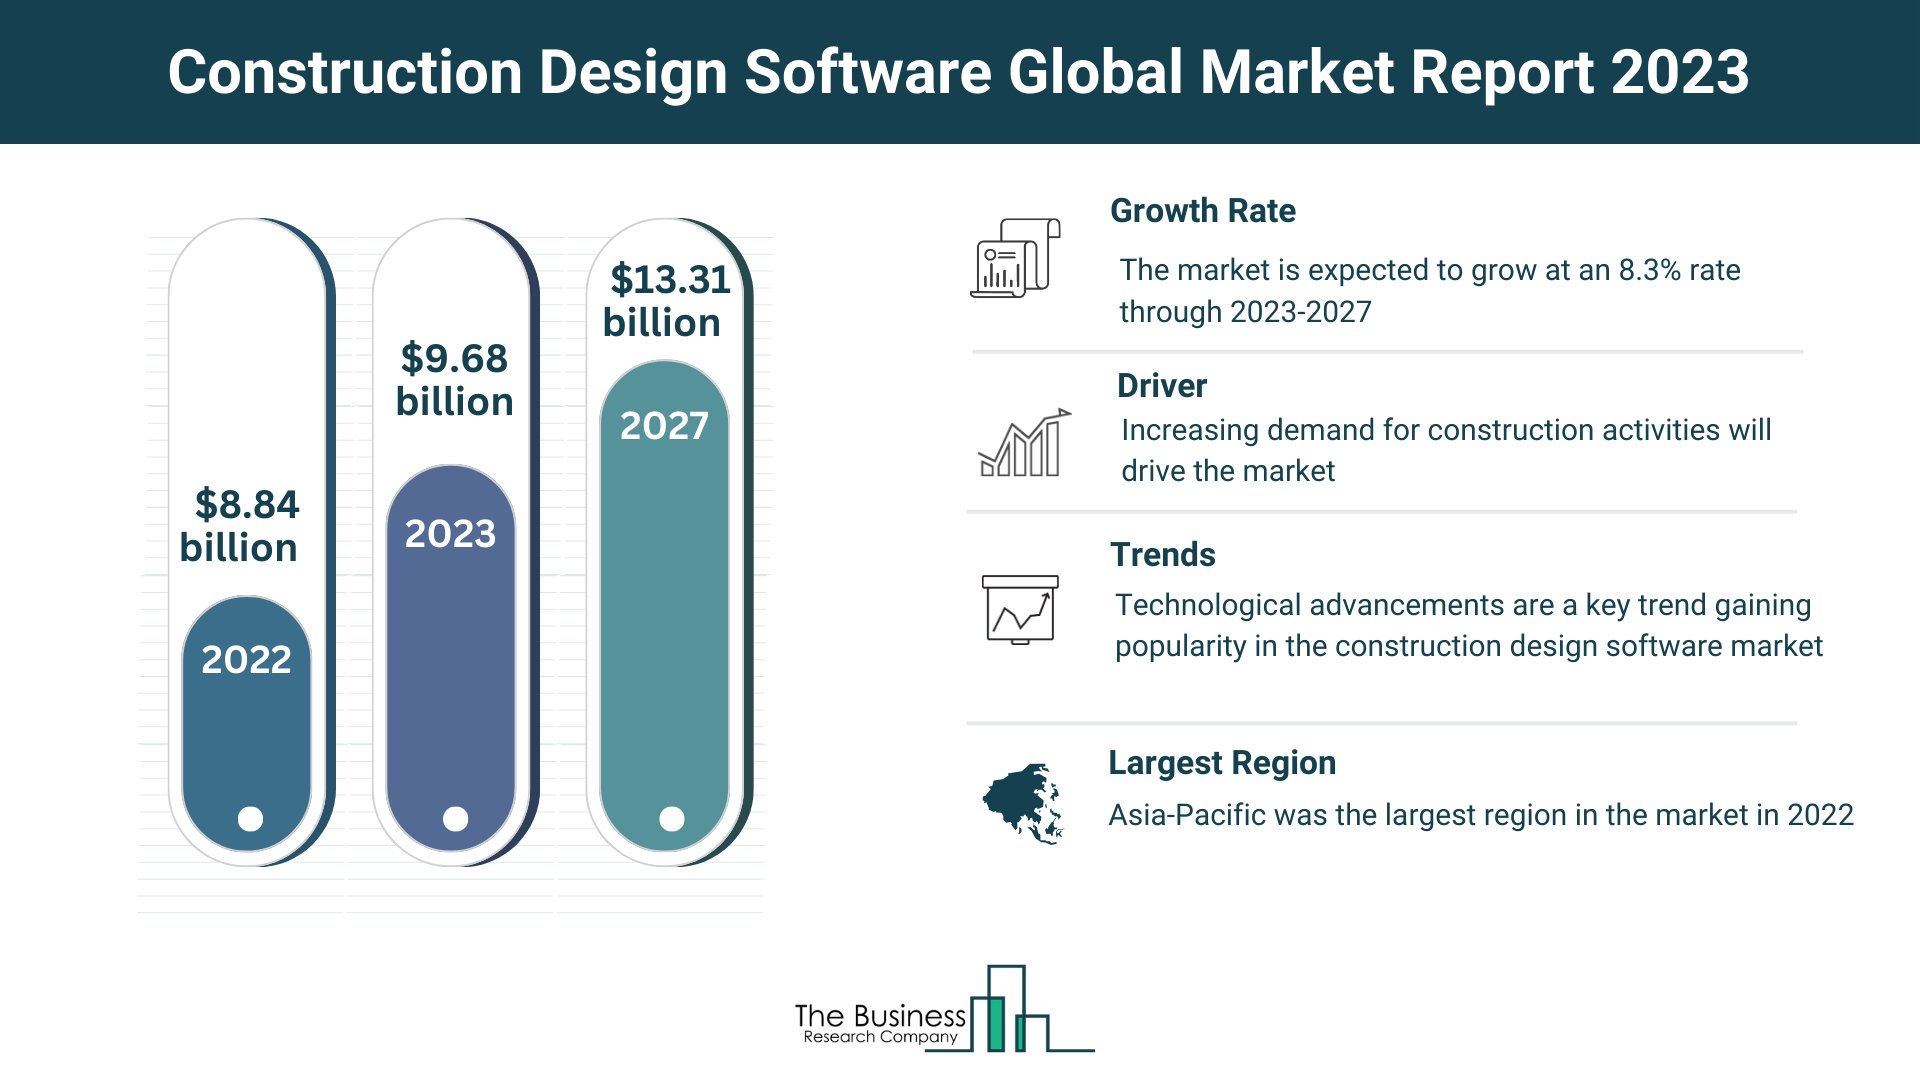 Global Construction Design Software Market